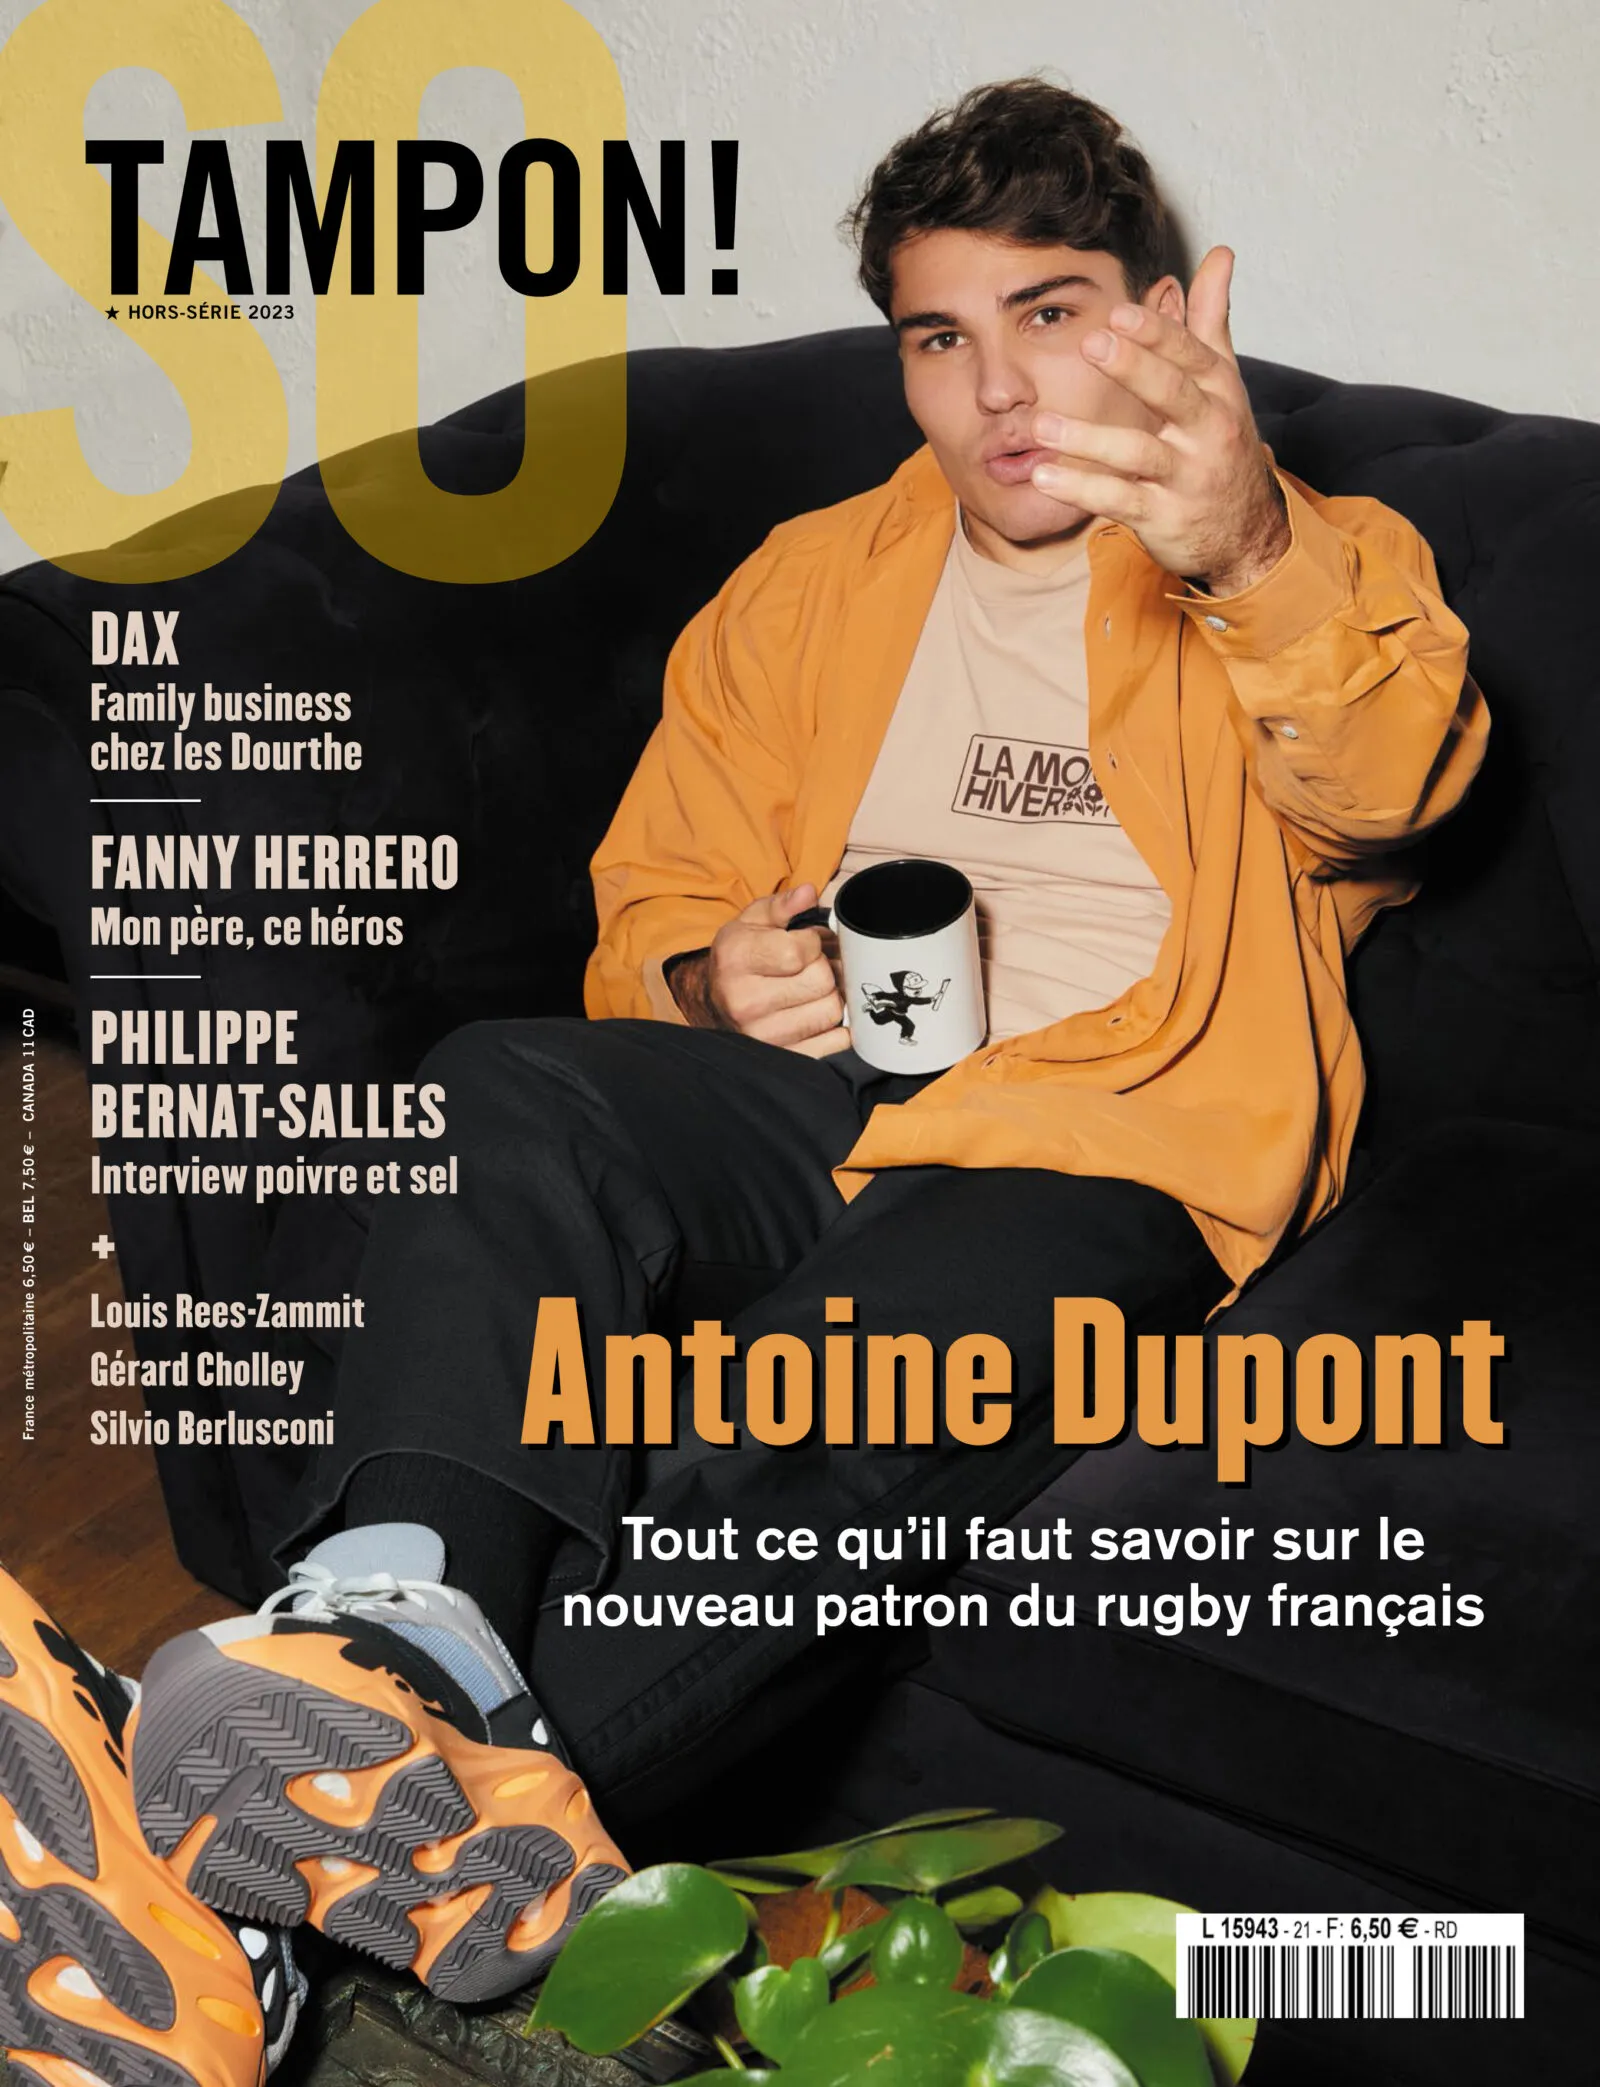 Antoine Dupont est en couverture de "Tampon!"